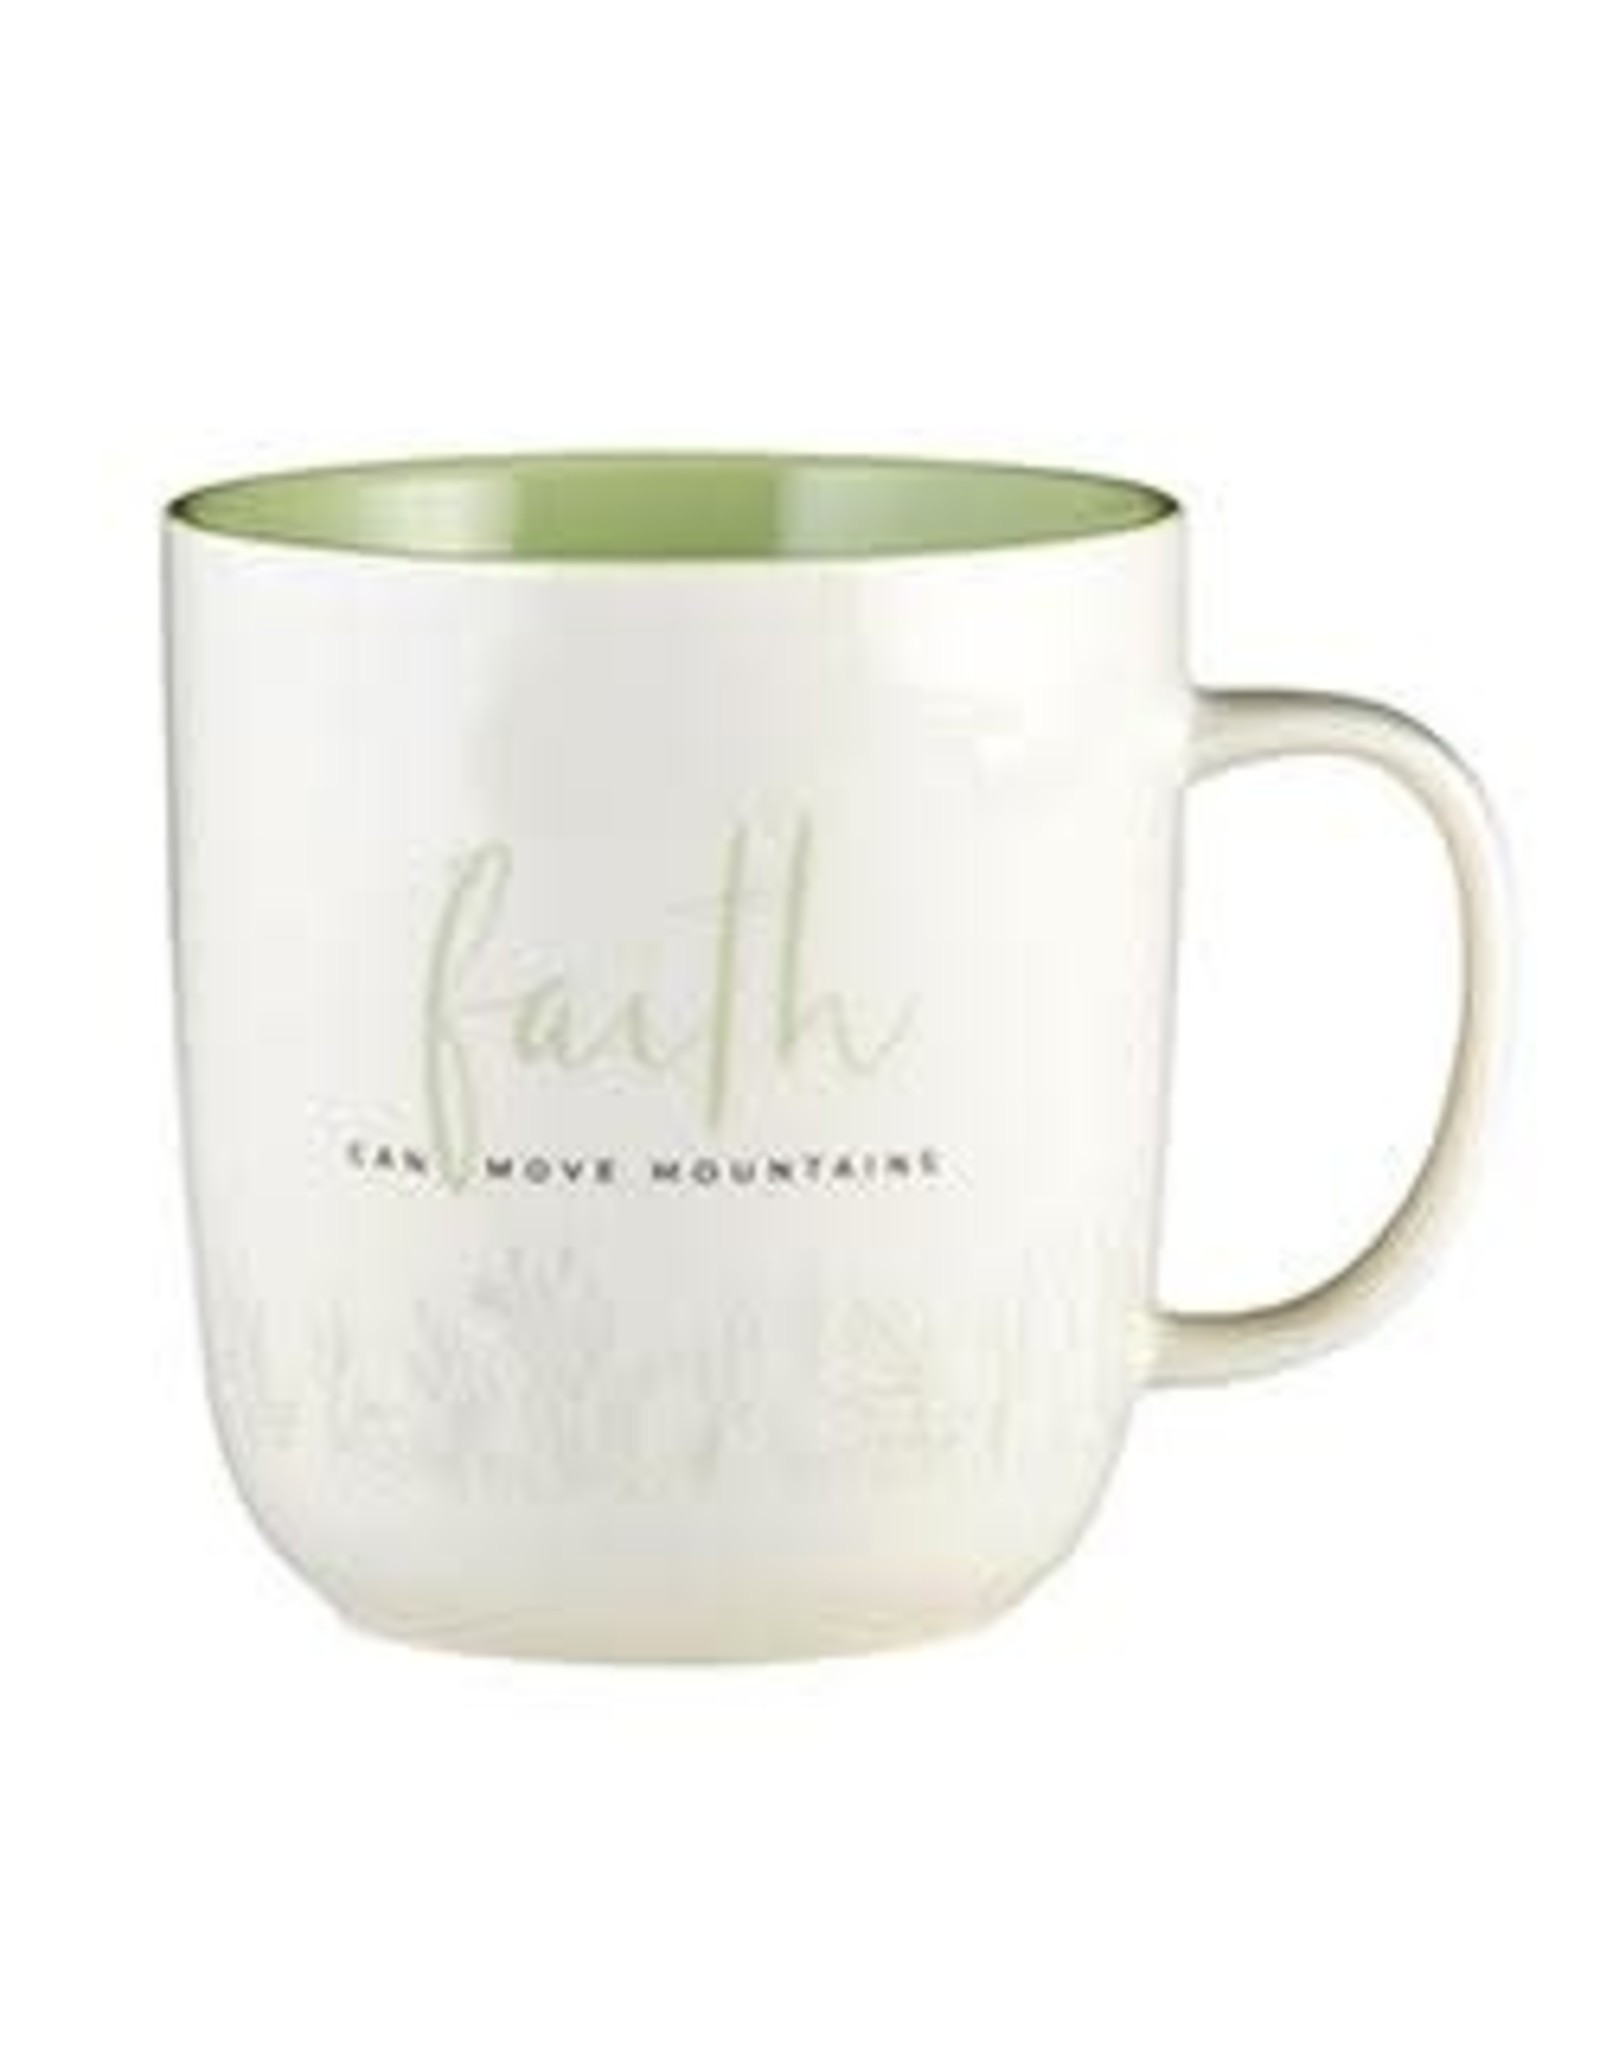 Faithworks - Gifts of Faith Faith Mug